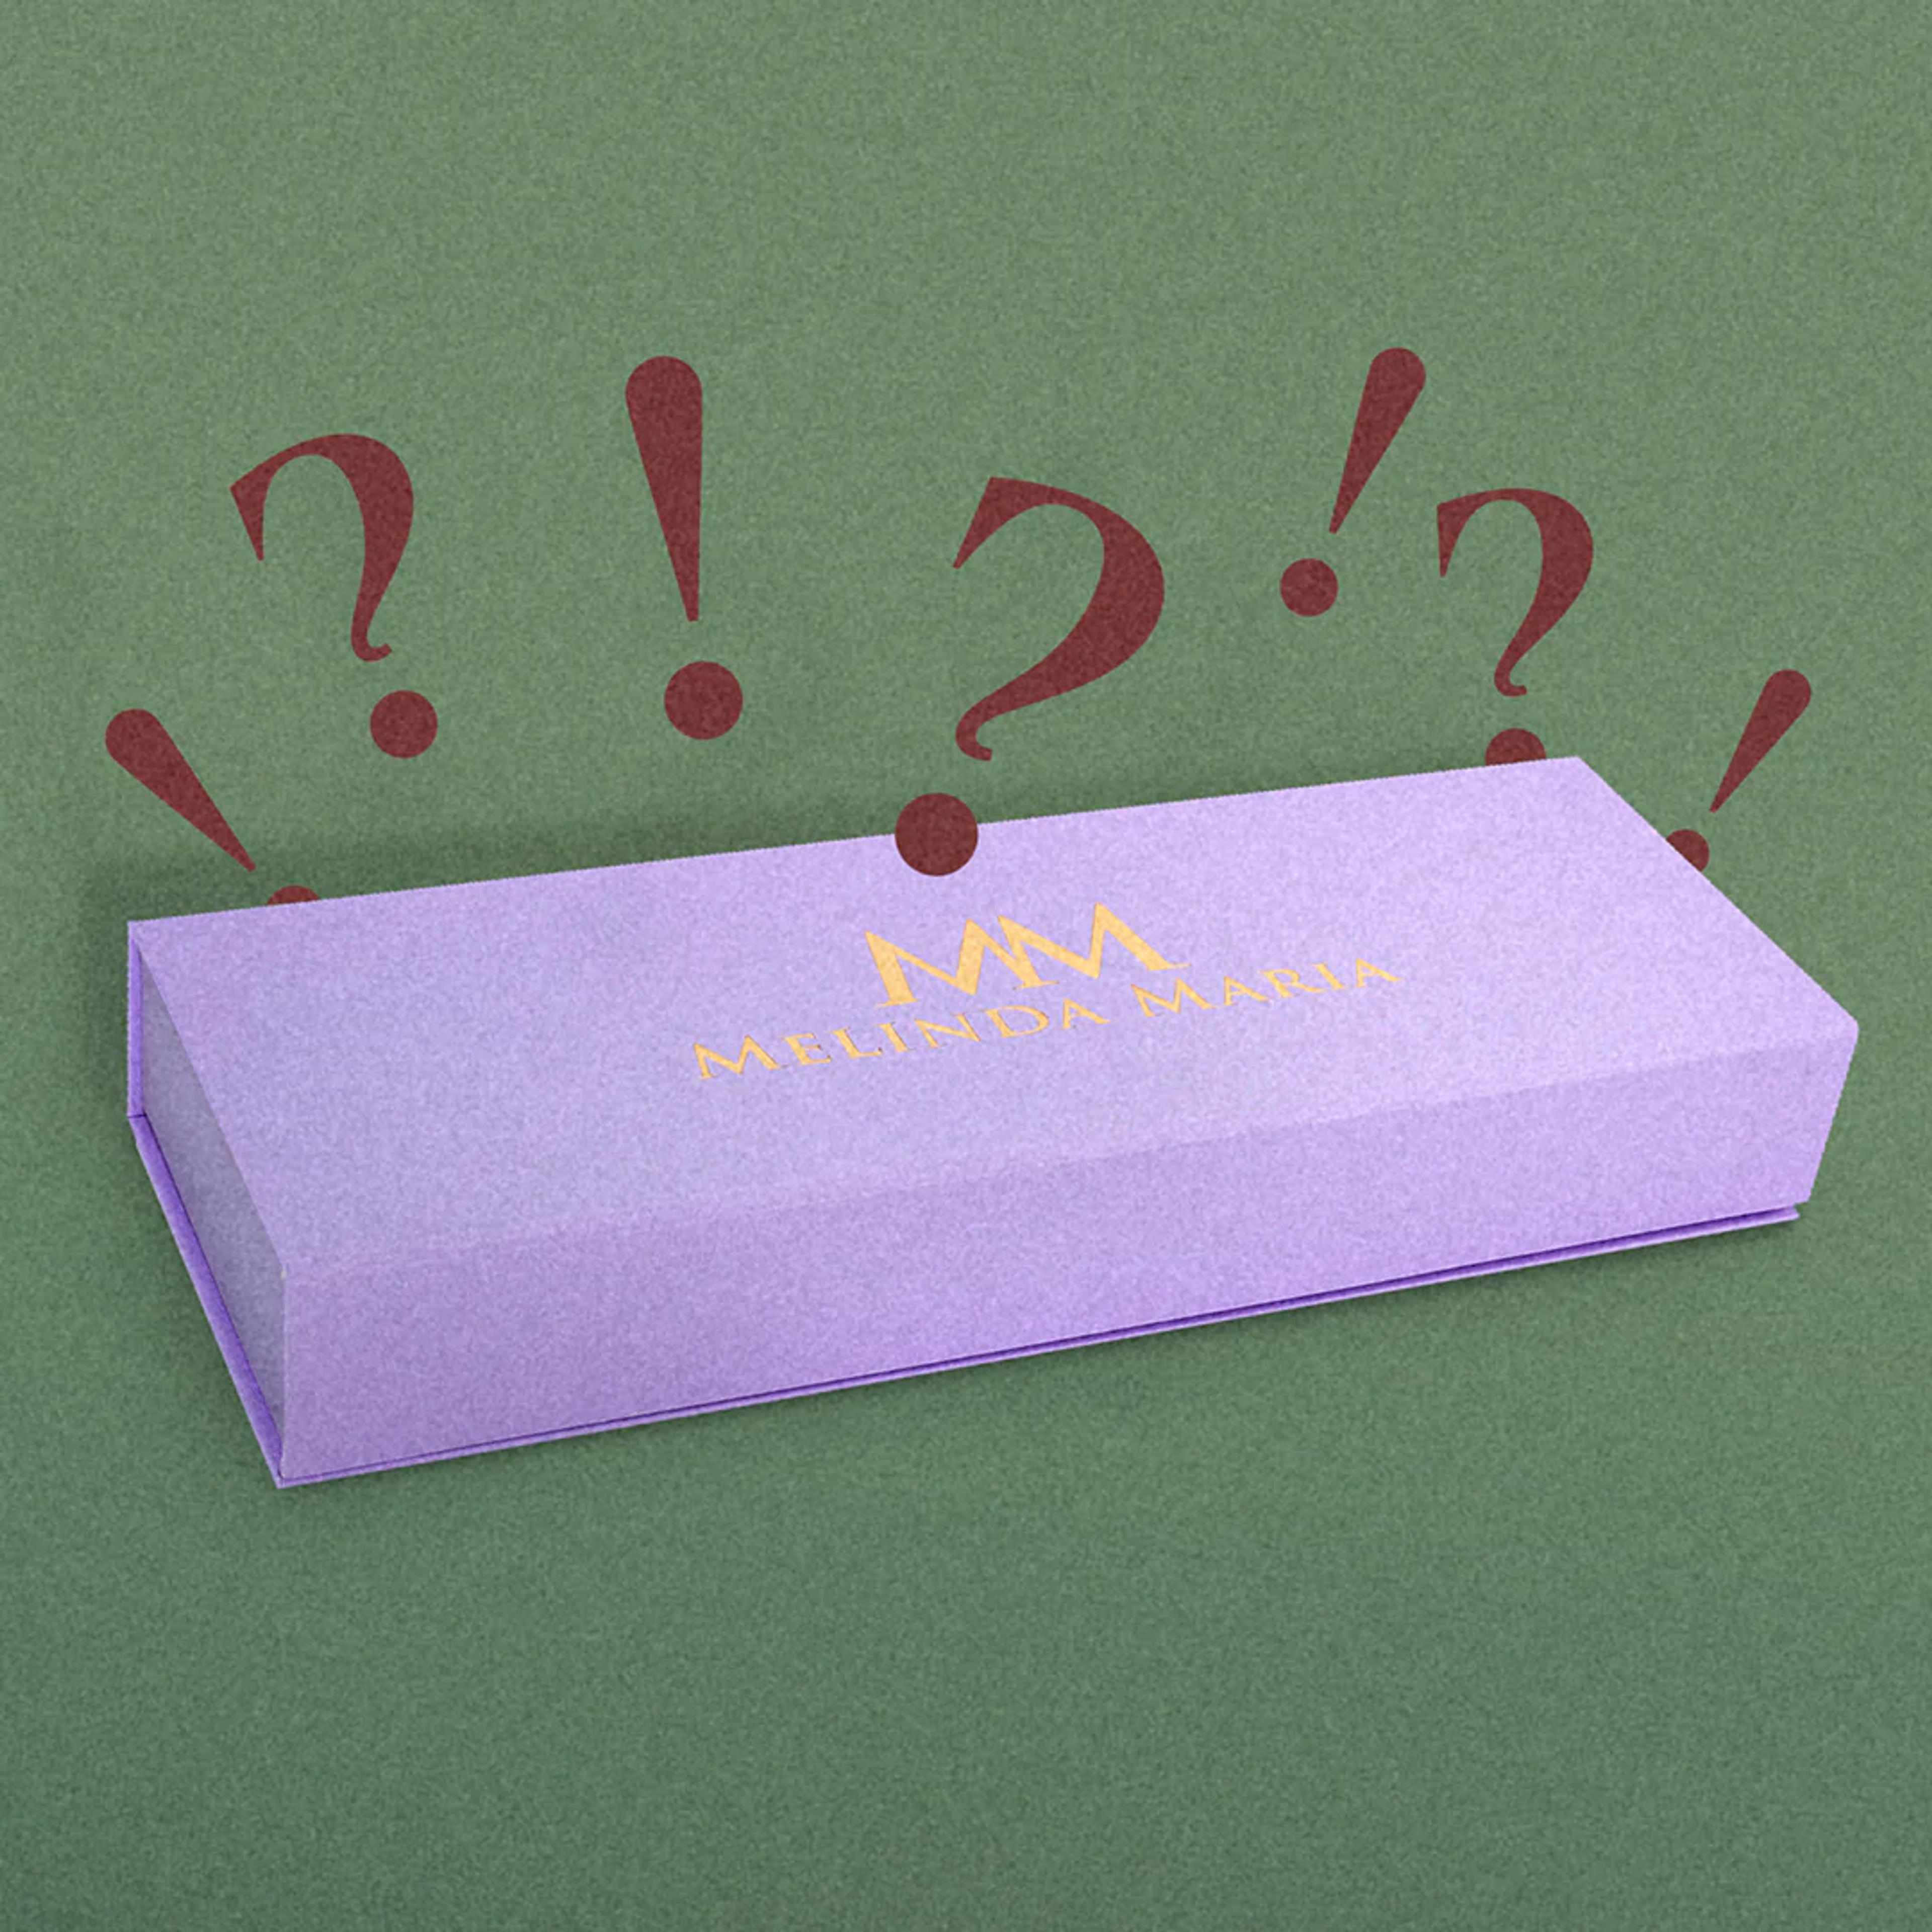 Mel’s Earring & Earcuff Mystery Box - Gold